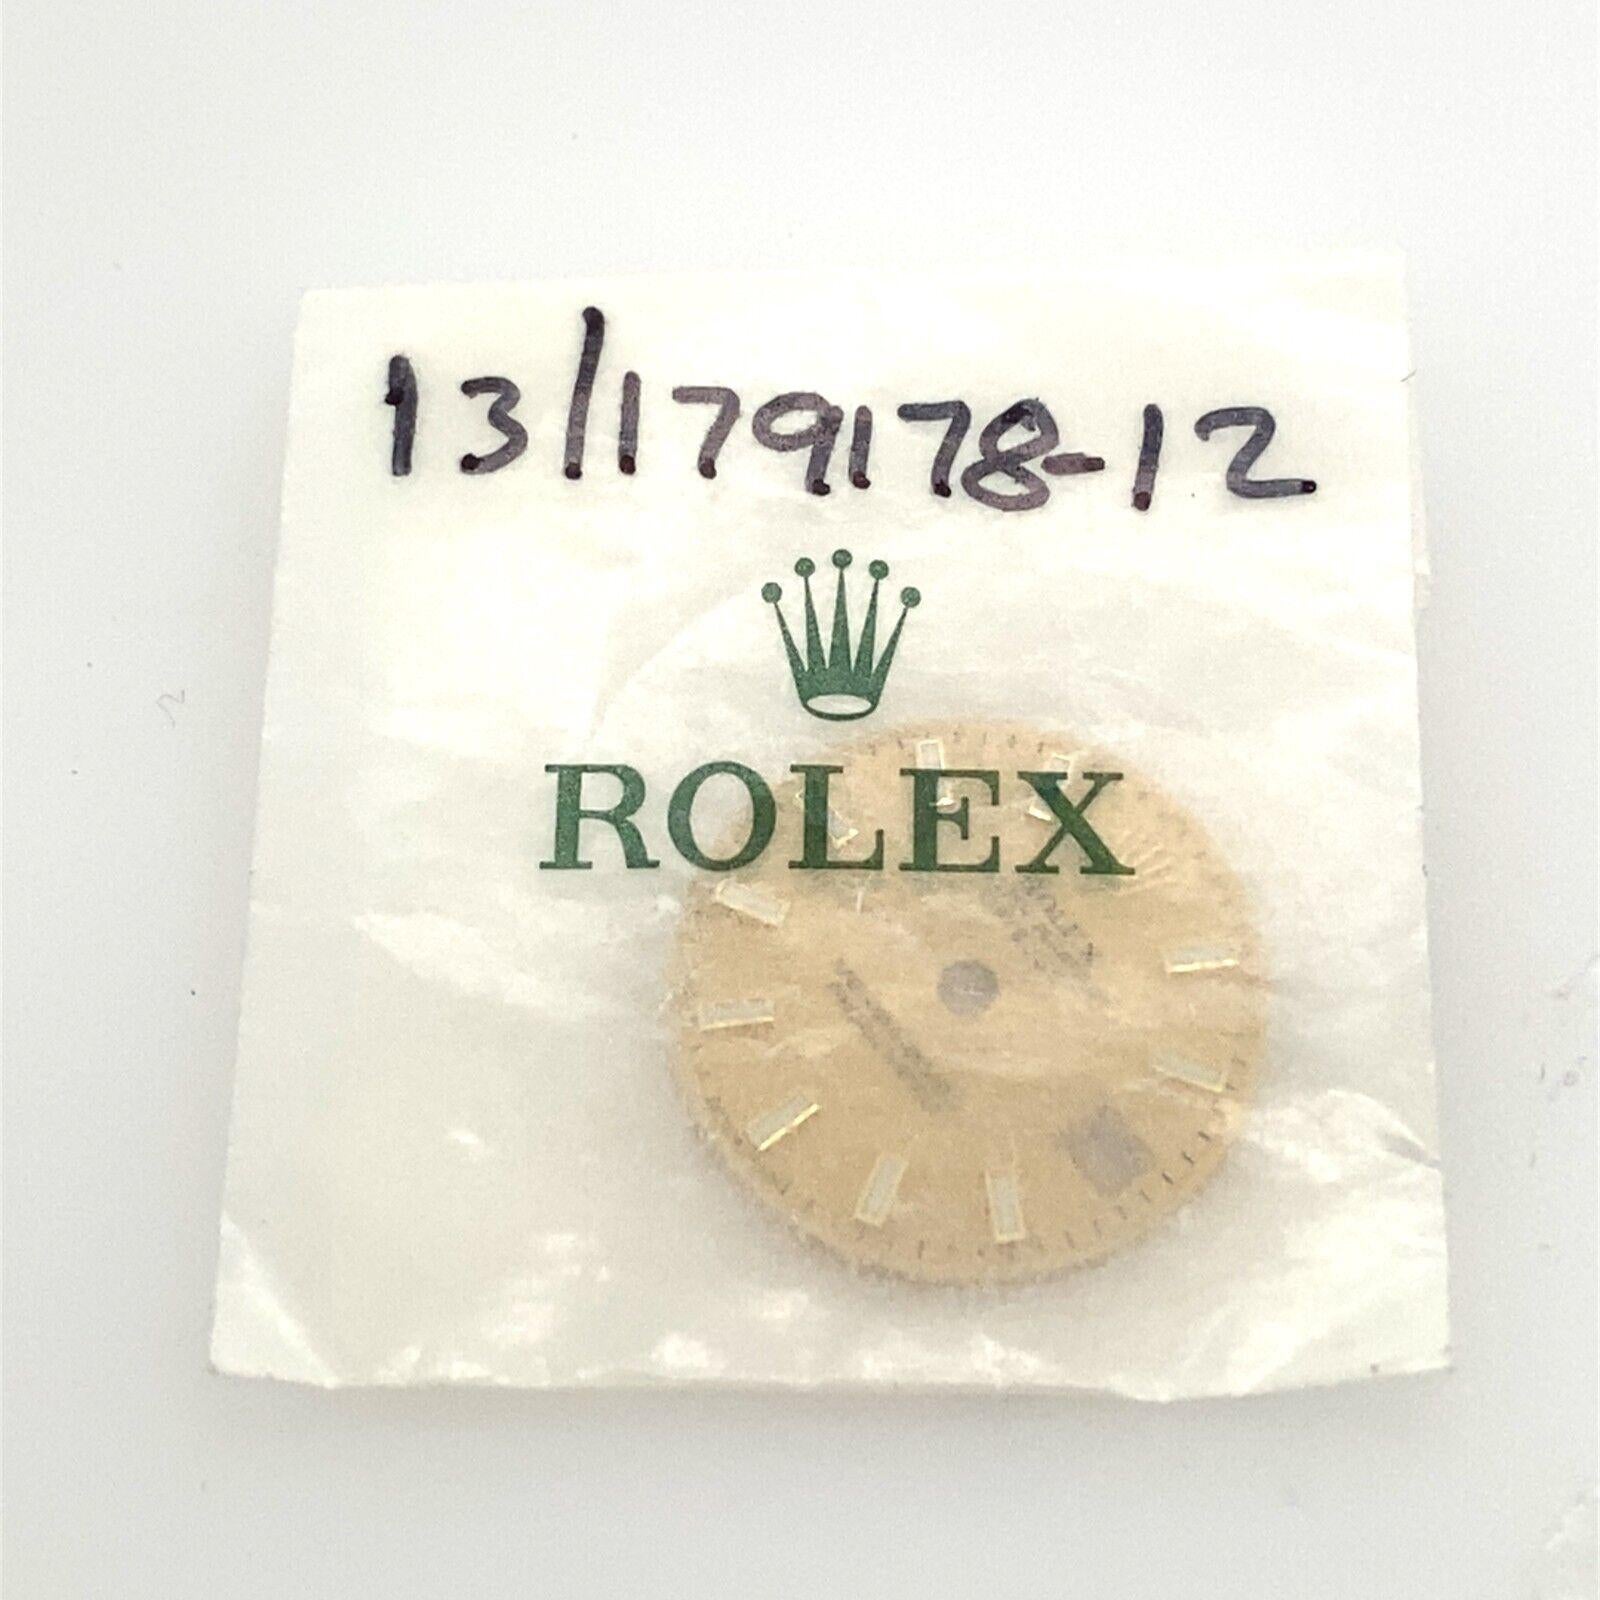 Montre Rolex Cadran Oyster Perpetual Date Just 13/179178-12. 
Avec des matraques blanches.

Informations supplémentaires : 
Numéro de série : 13/179178-12
Excellent état
SMS6581